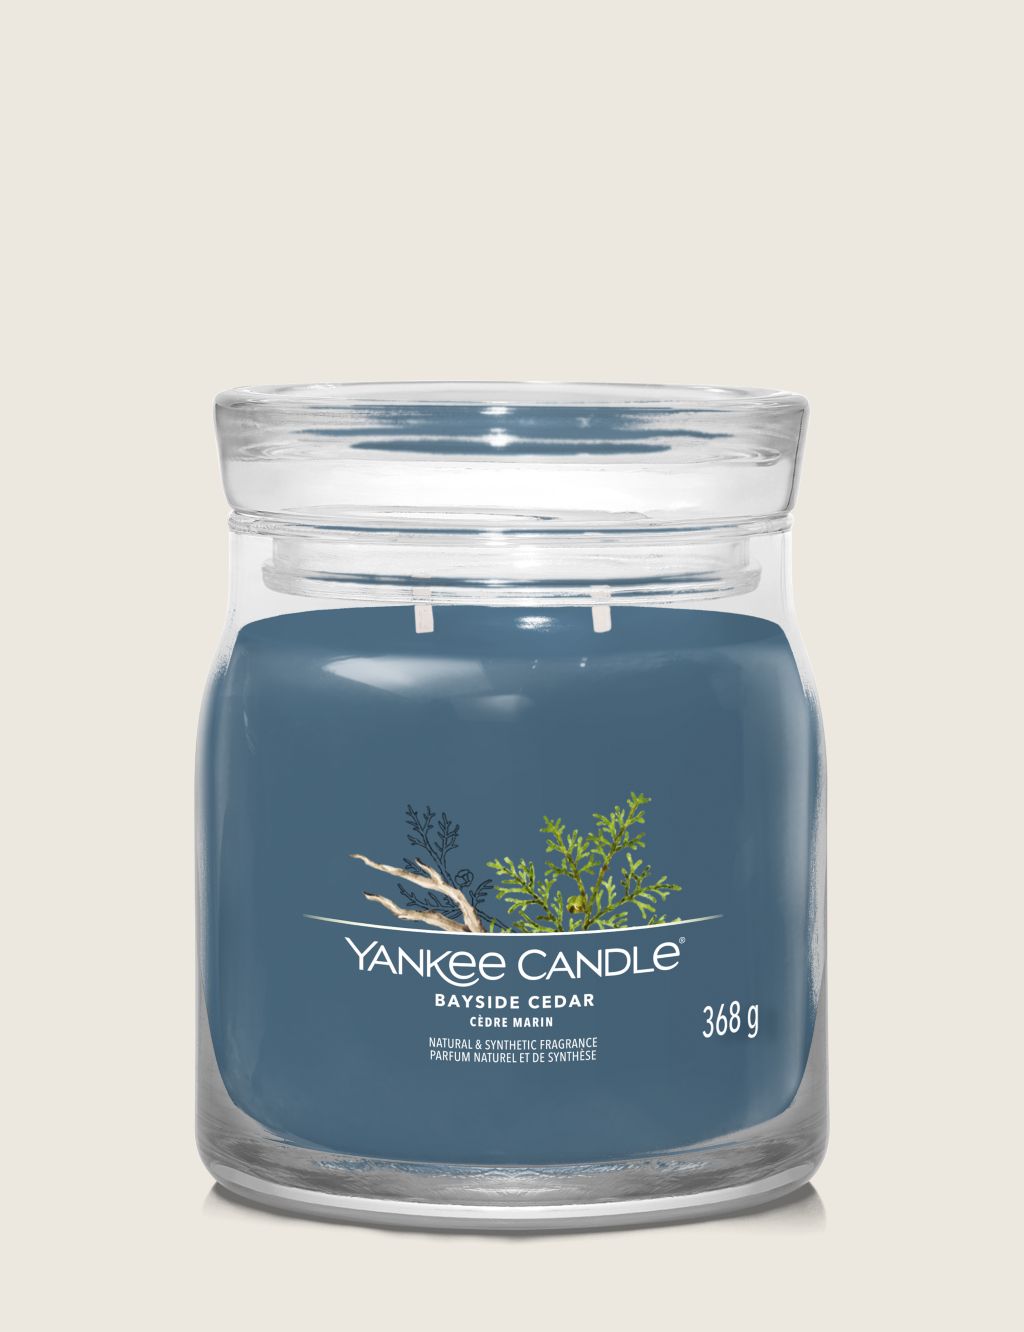 Bayside Cedar Signature Medium Jar Scented Candle image 1